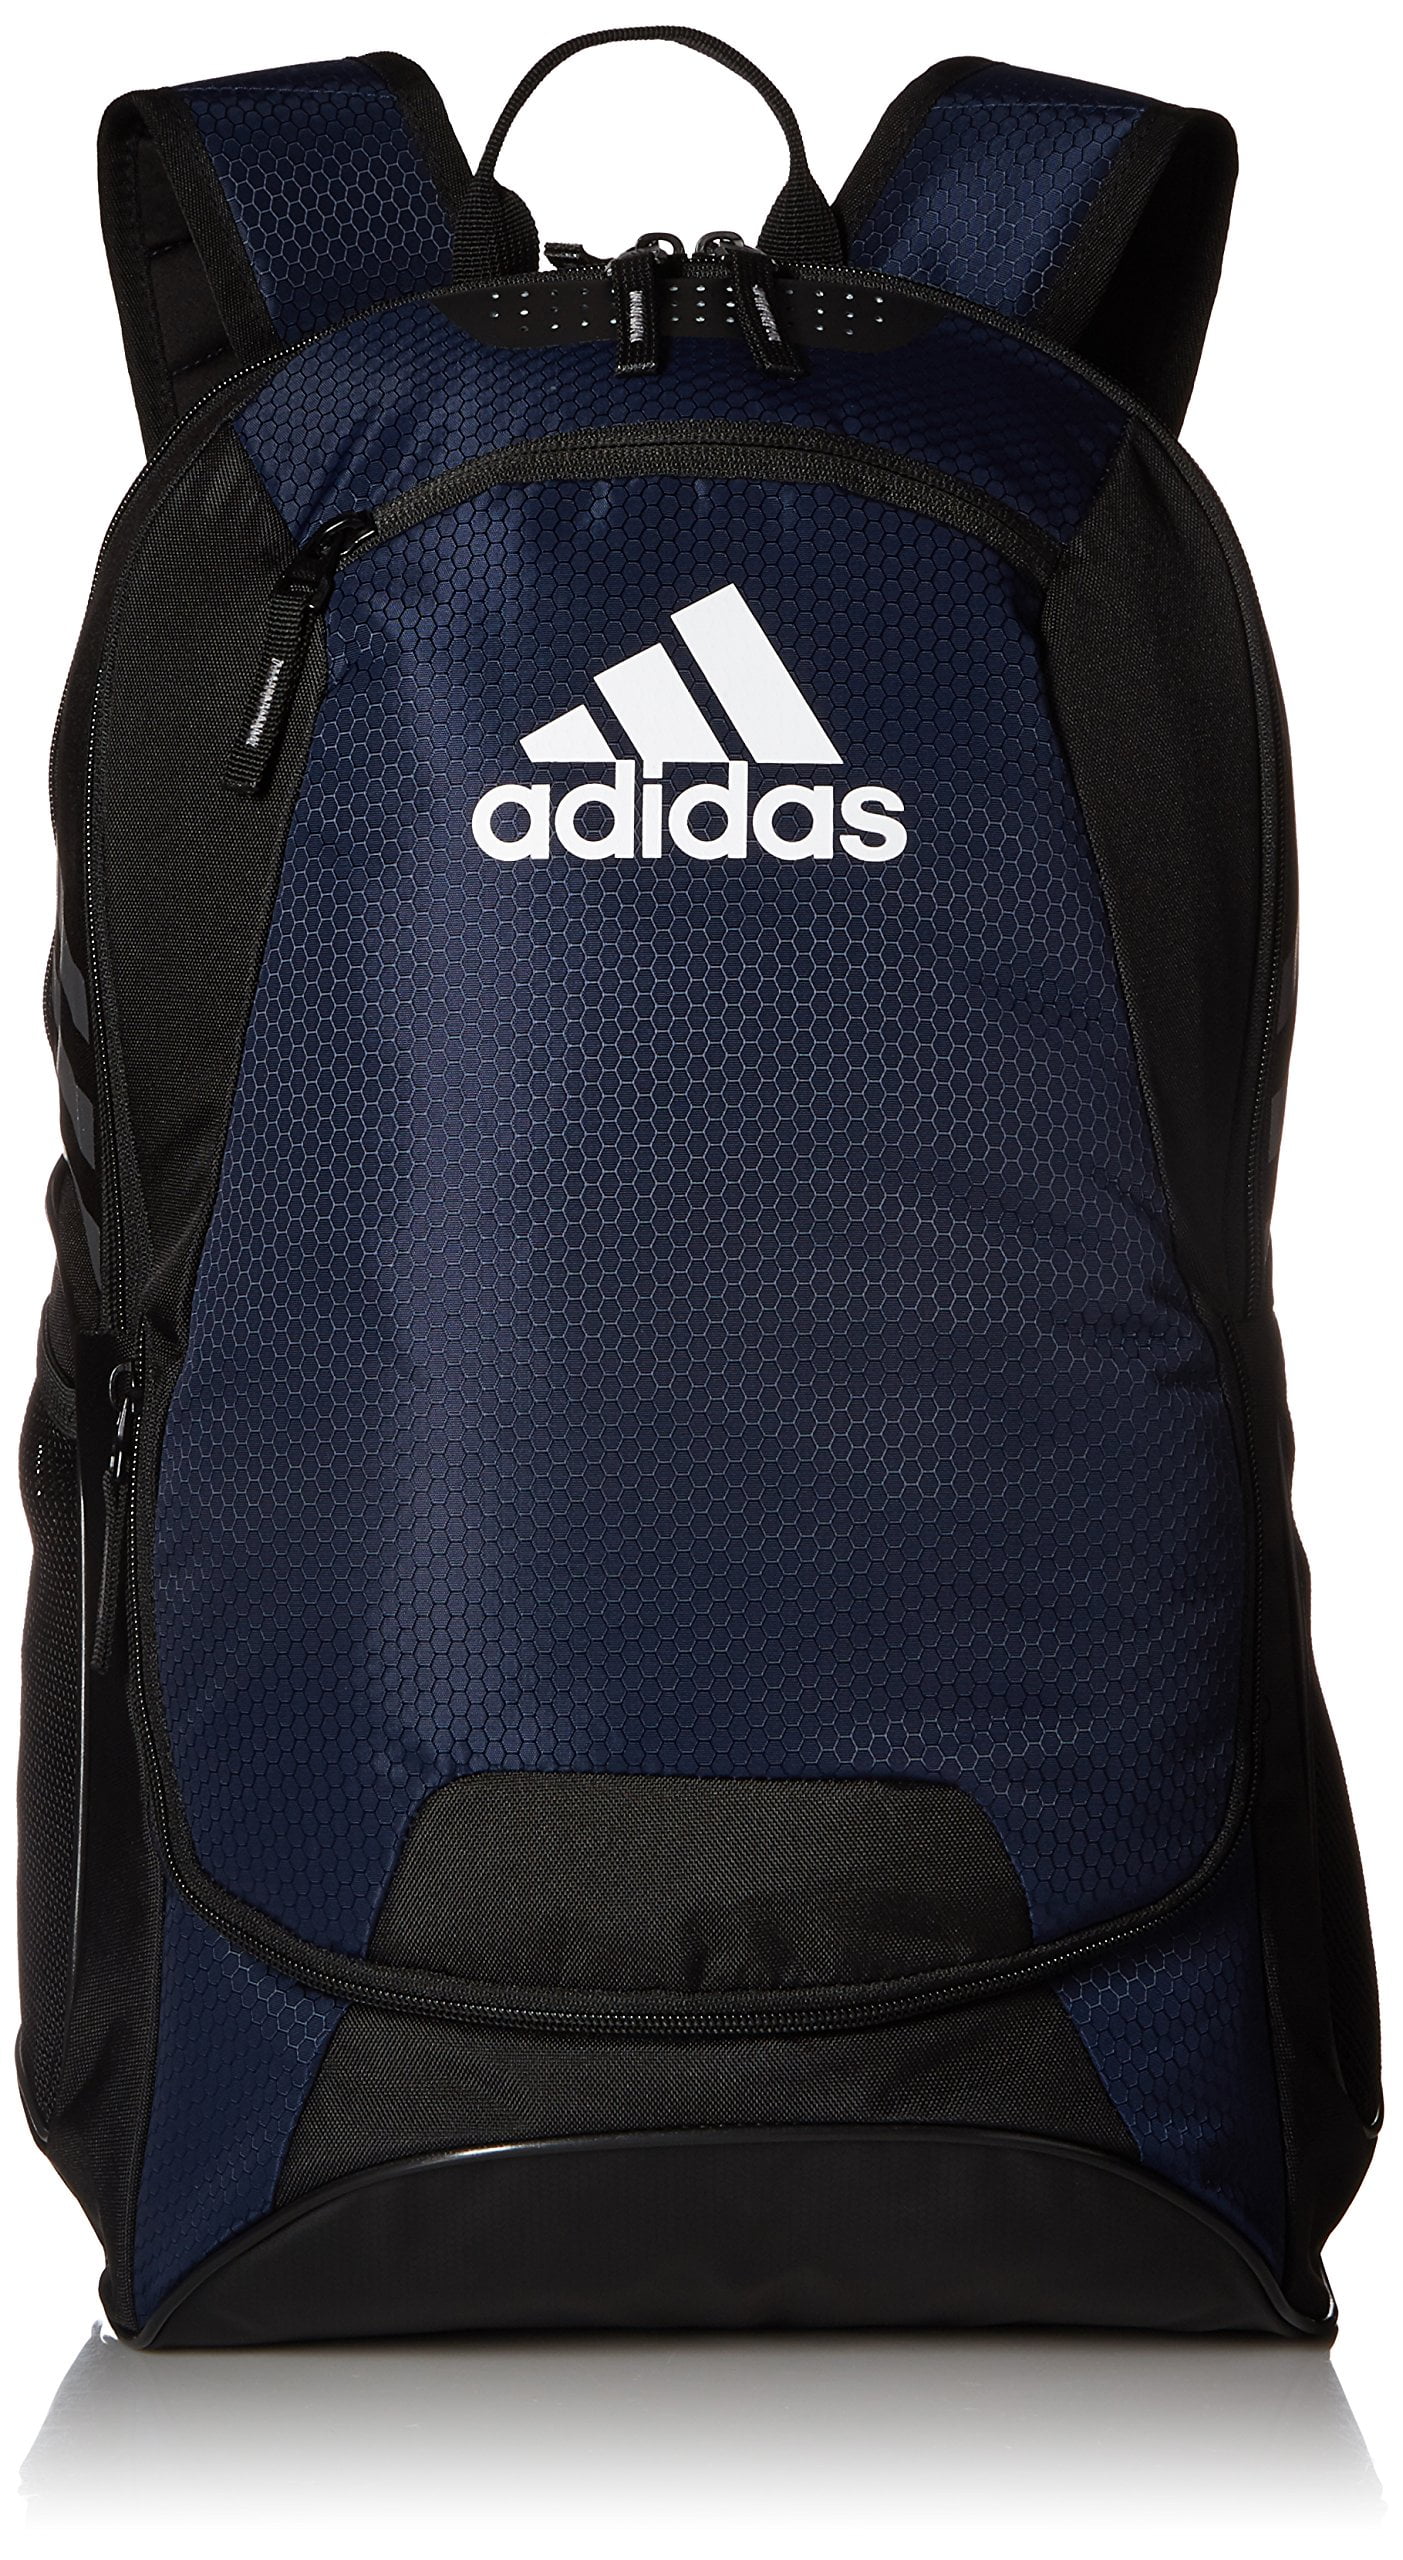 adidas stadium ii backpack